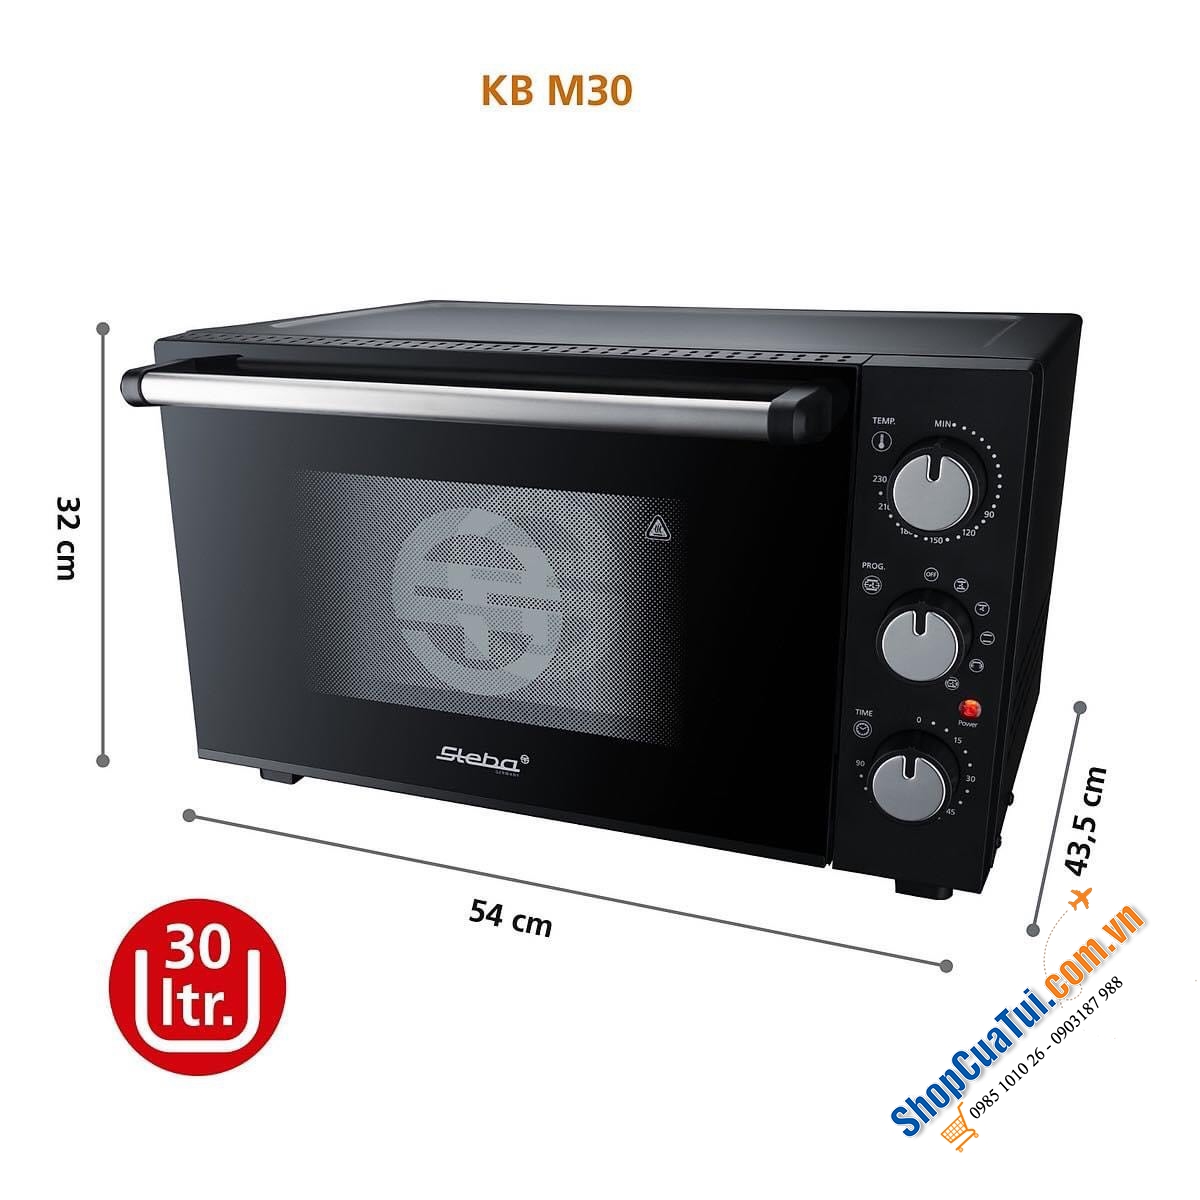 Lò nướng Steba KB M30 dung tích 30 lít công suất 1500w, tiện dùng cho bếp gia đình